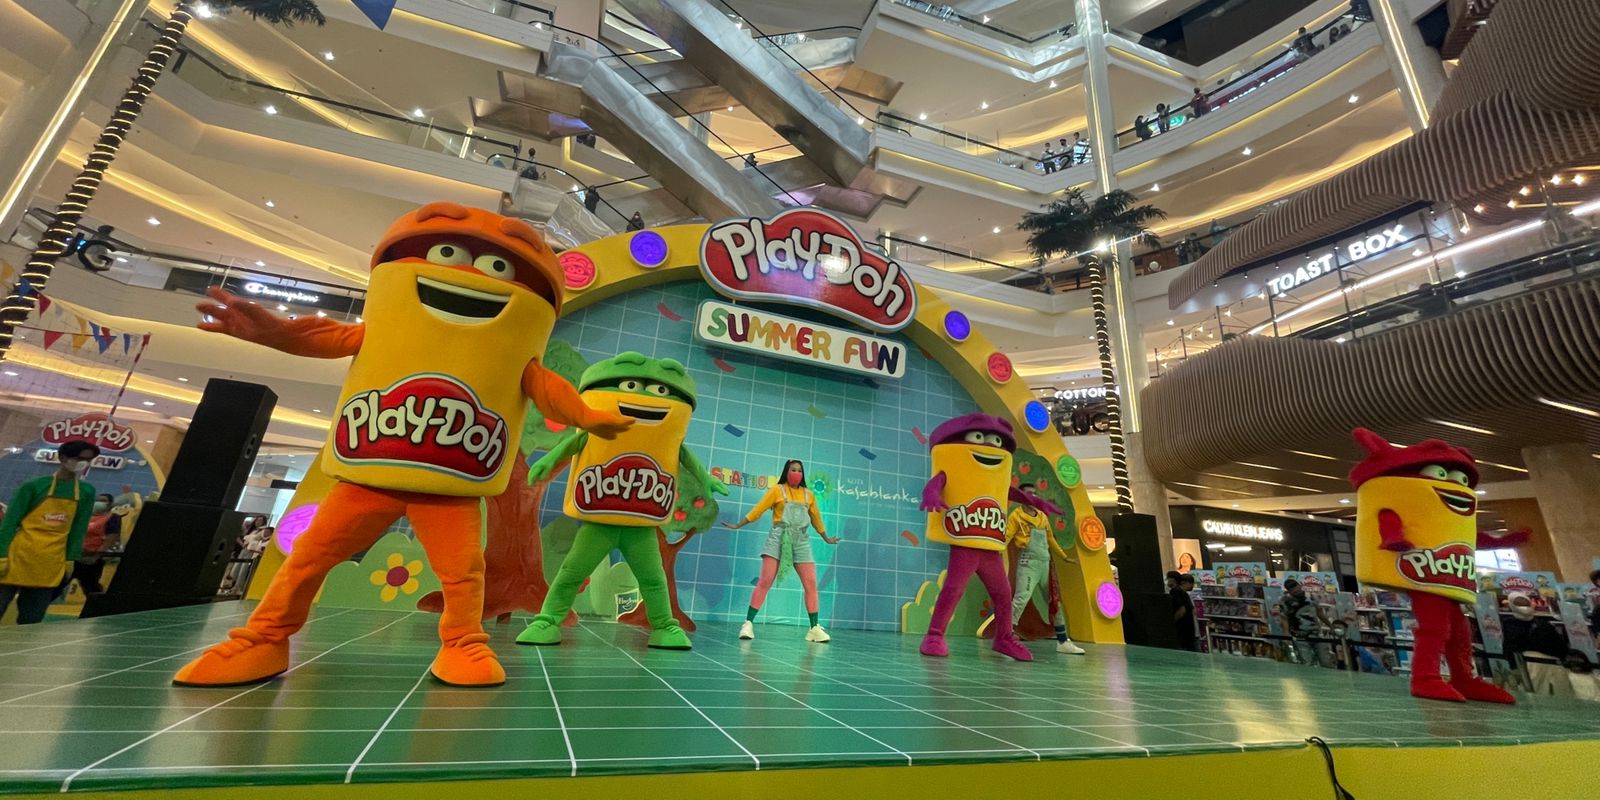 Ajak Anak Belajar dan Bermain di Play-Doh Summer Fun